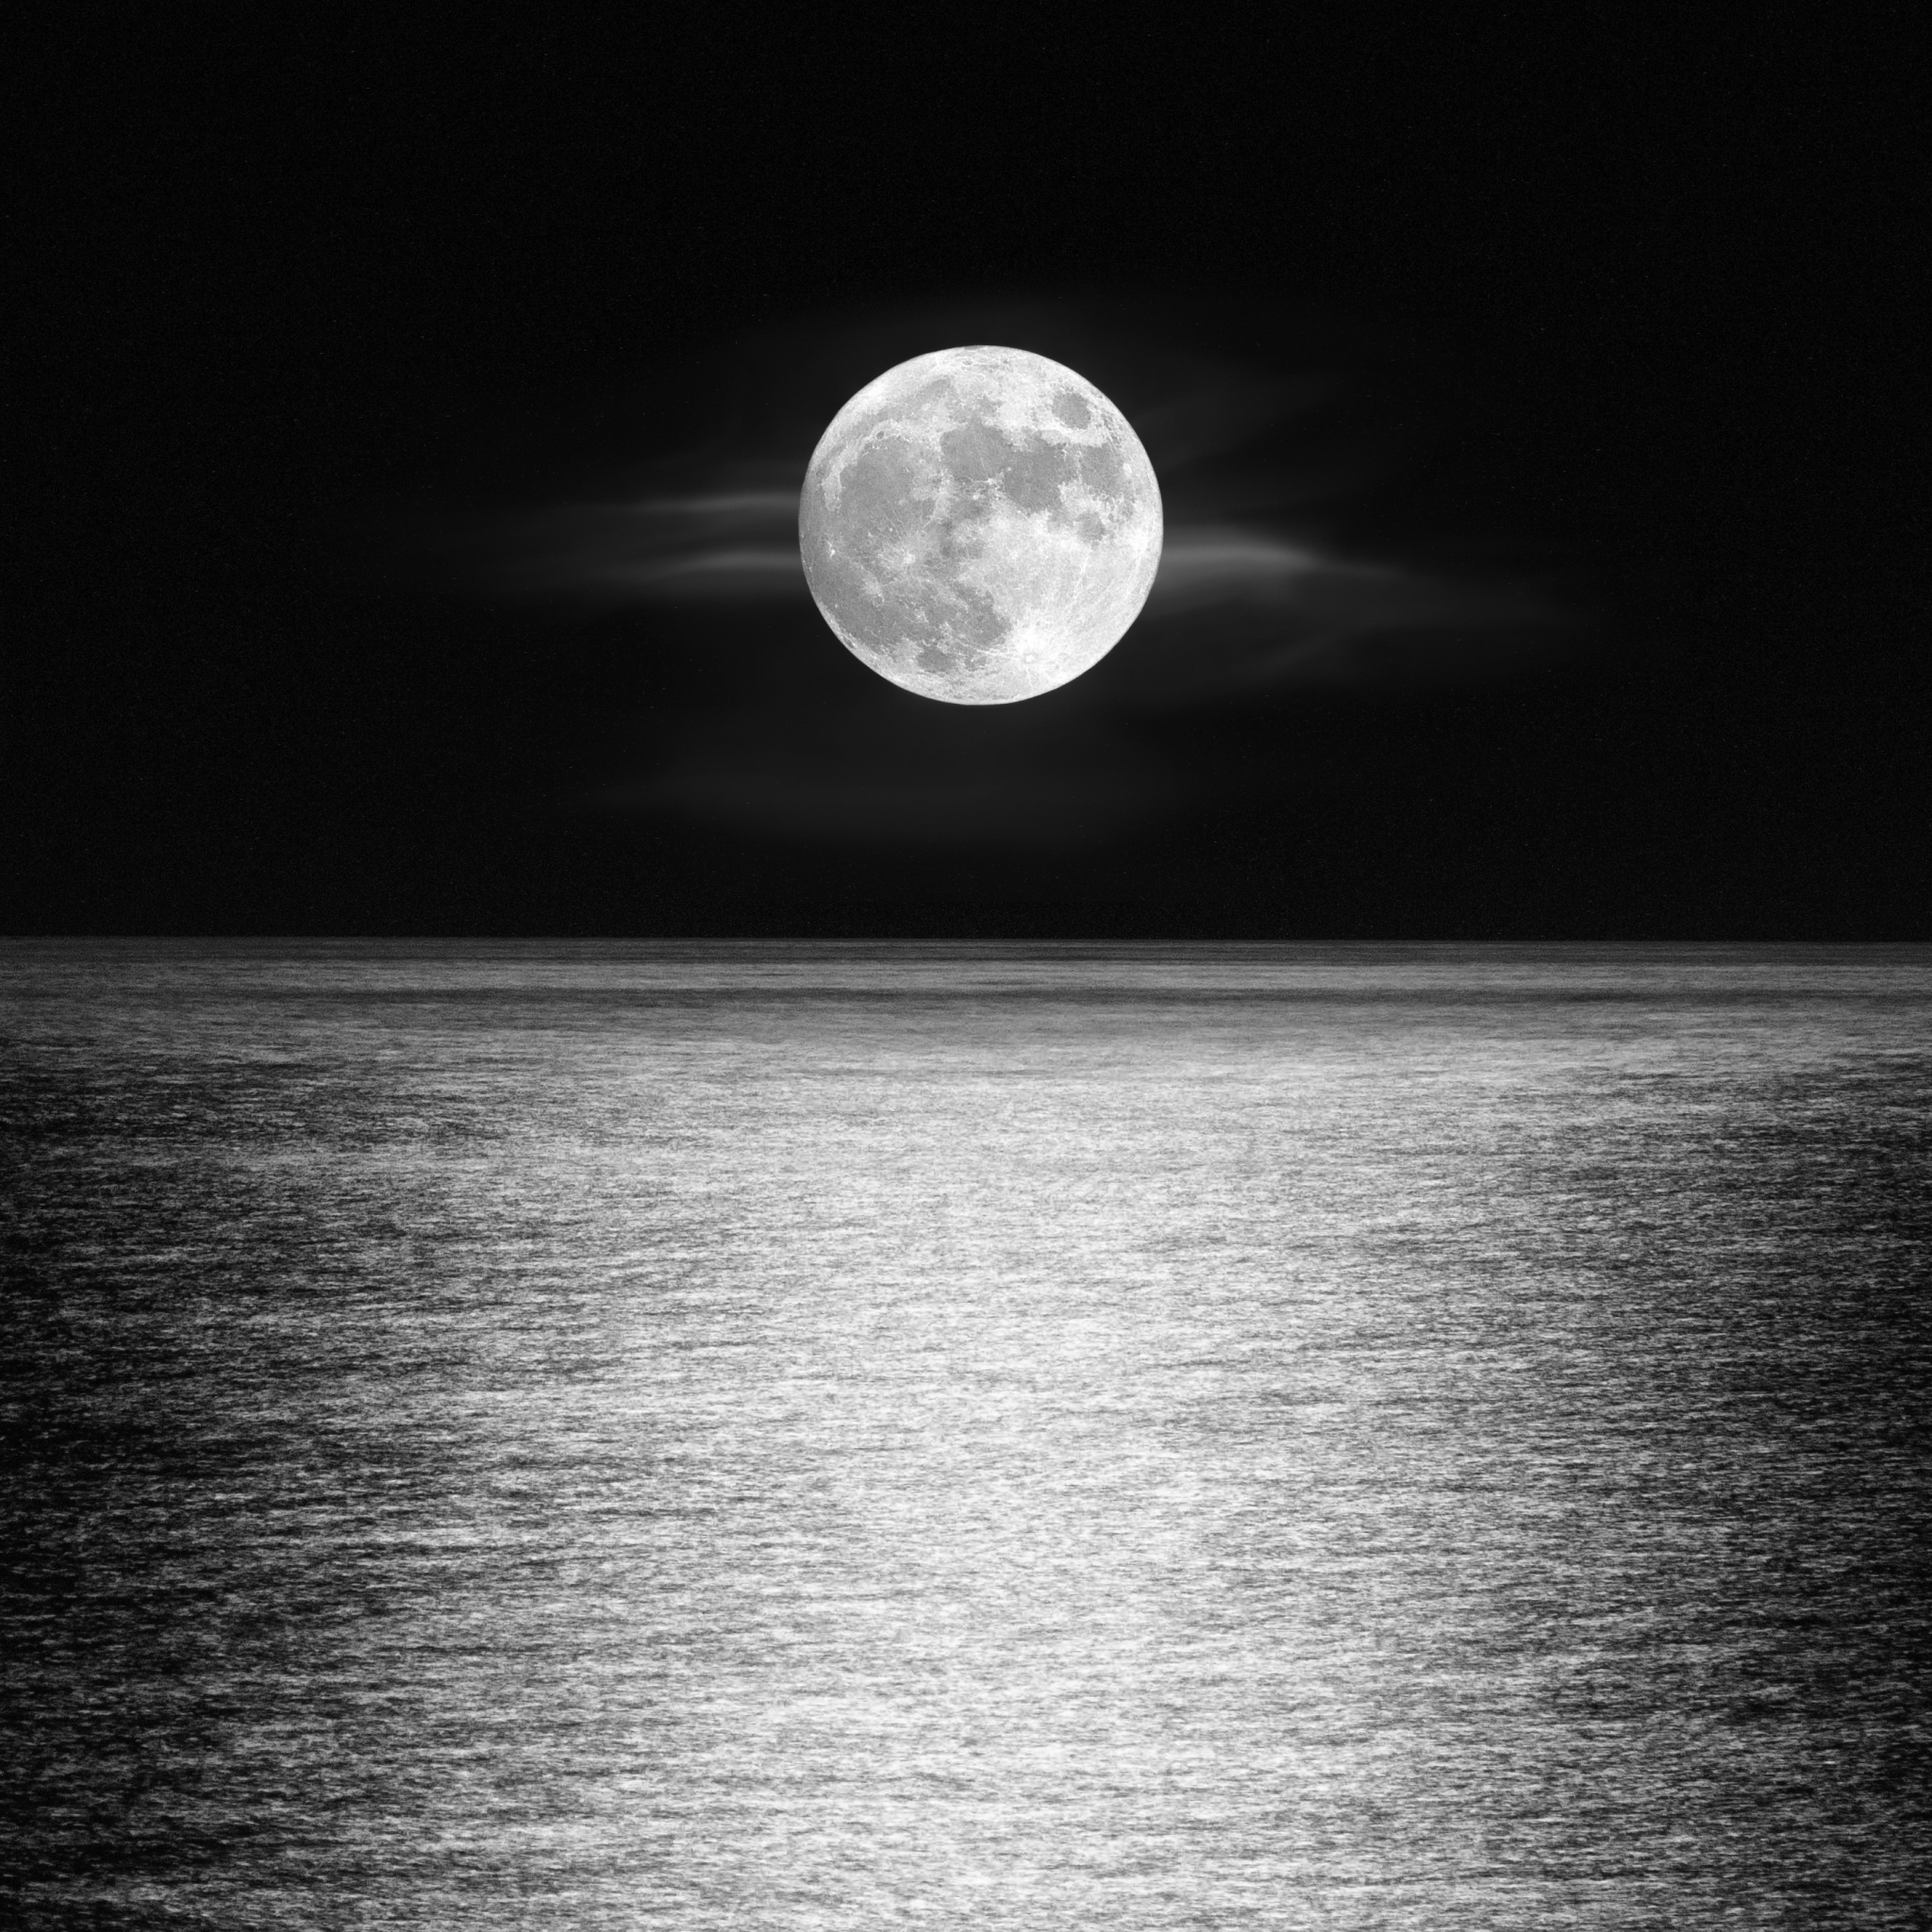 Moonlight over the Ocean by Antonio Angel Lopez Granados